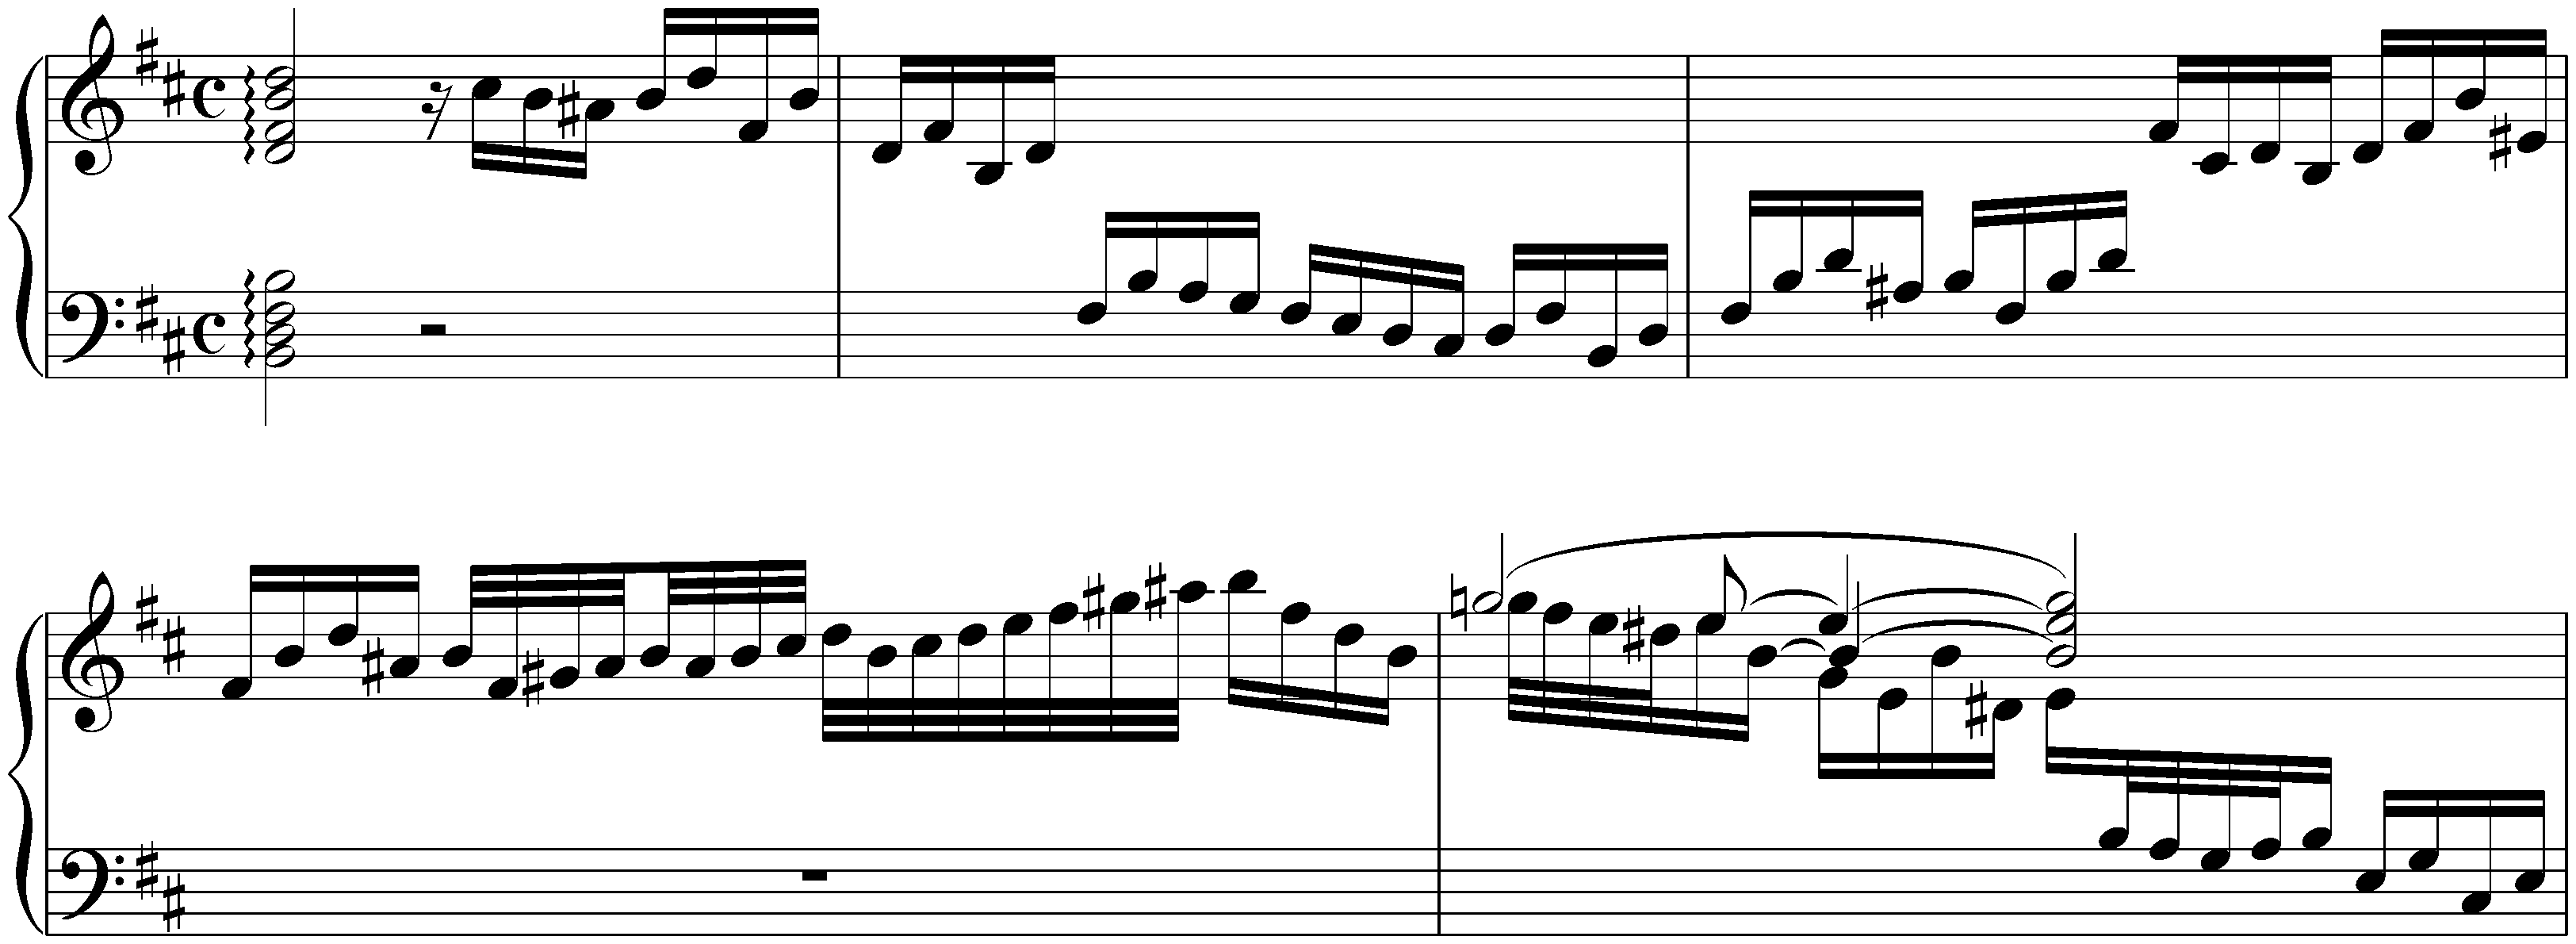 Prelude in B minor, BWV 923